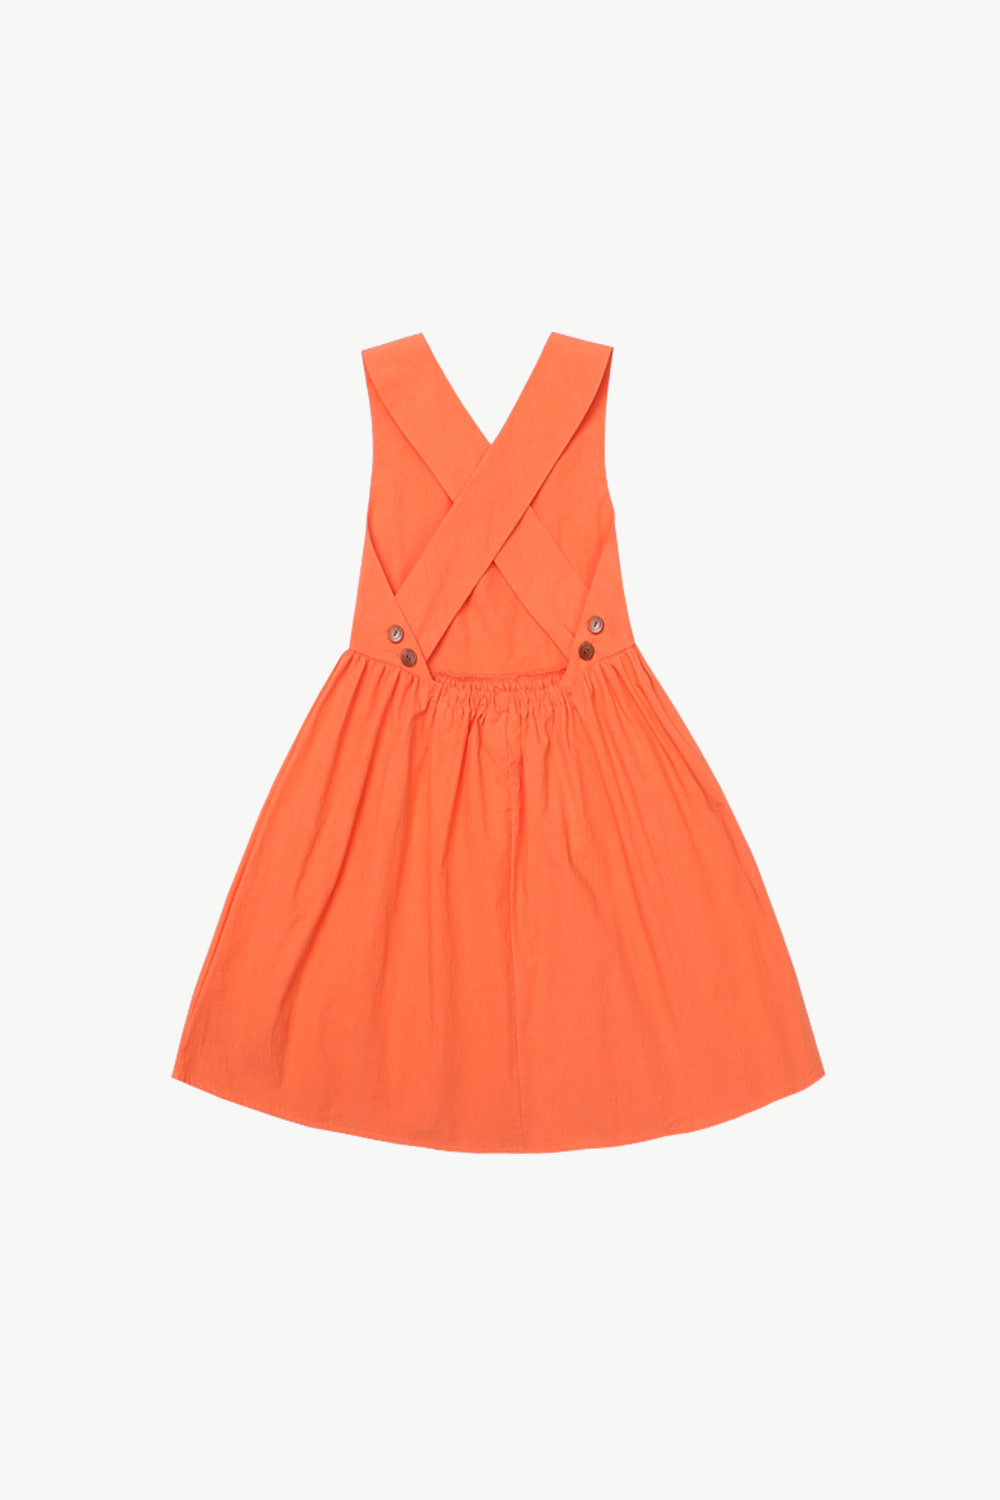 ENPR 서스펜더 드레스 (오렌지)